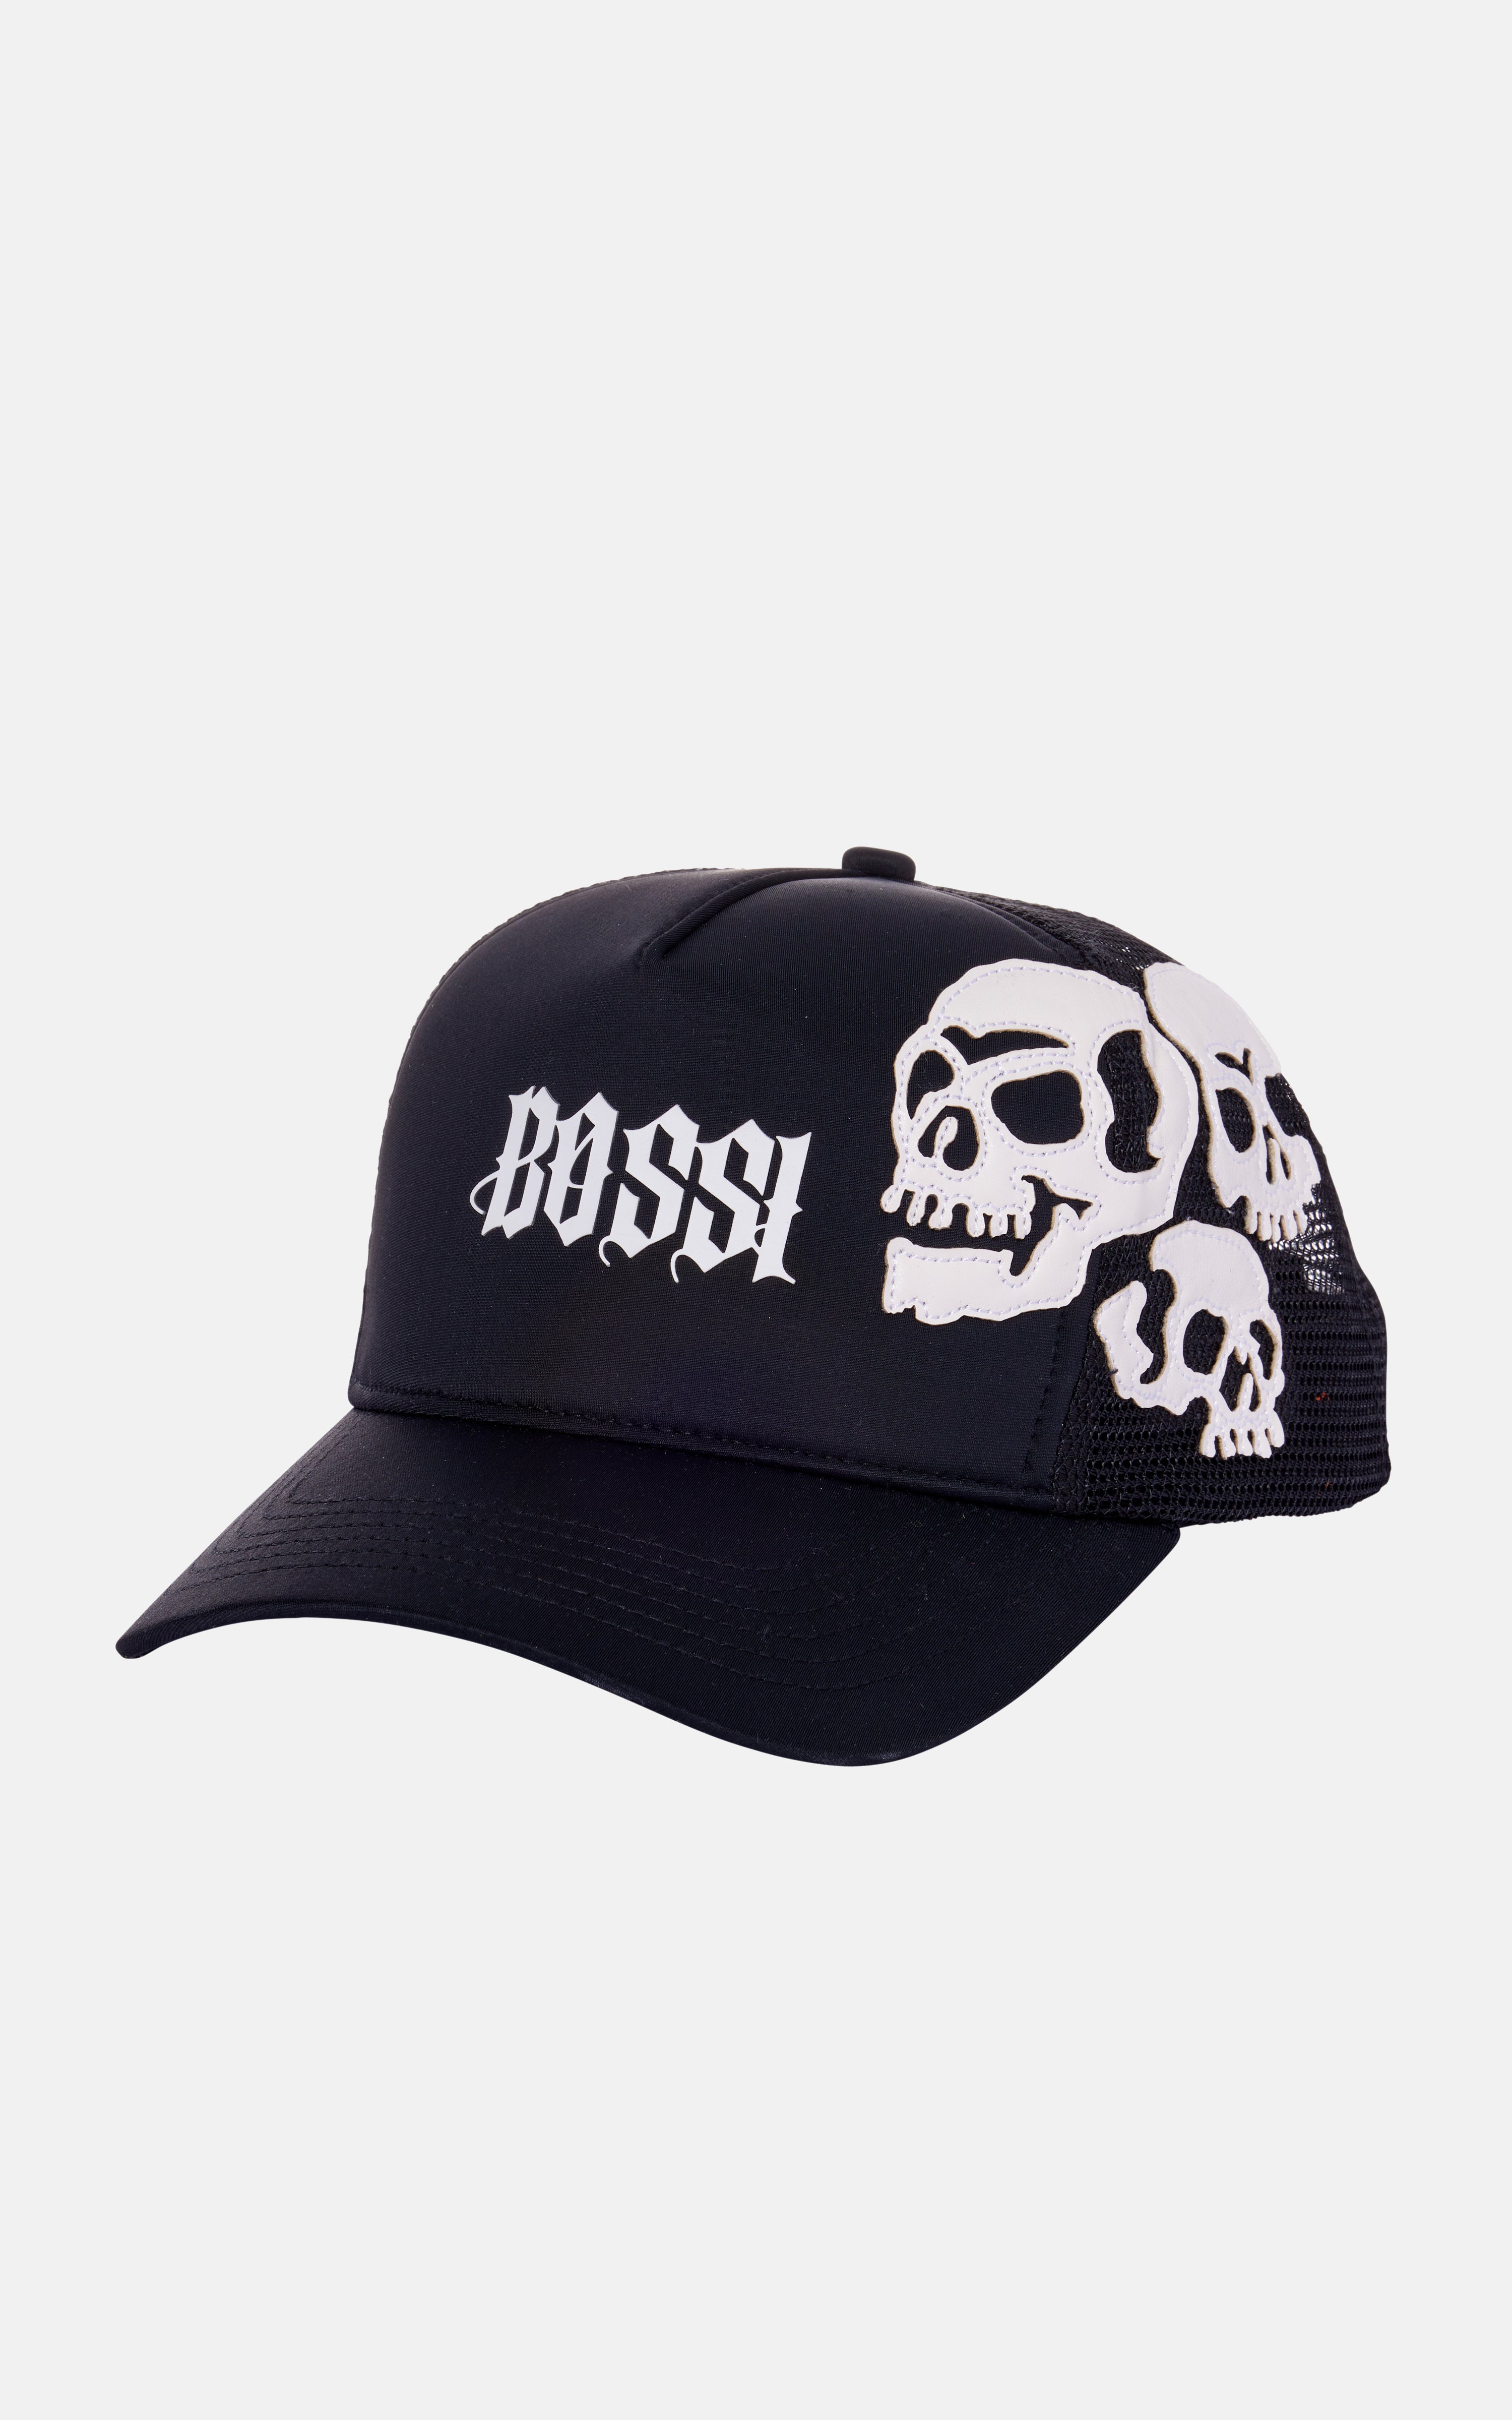 Skull Trucker blueandcream – Hat White Black 